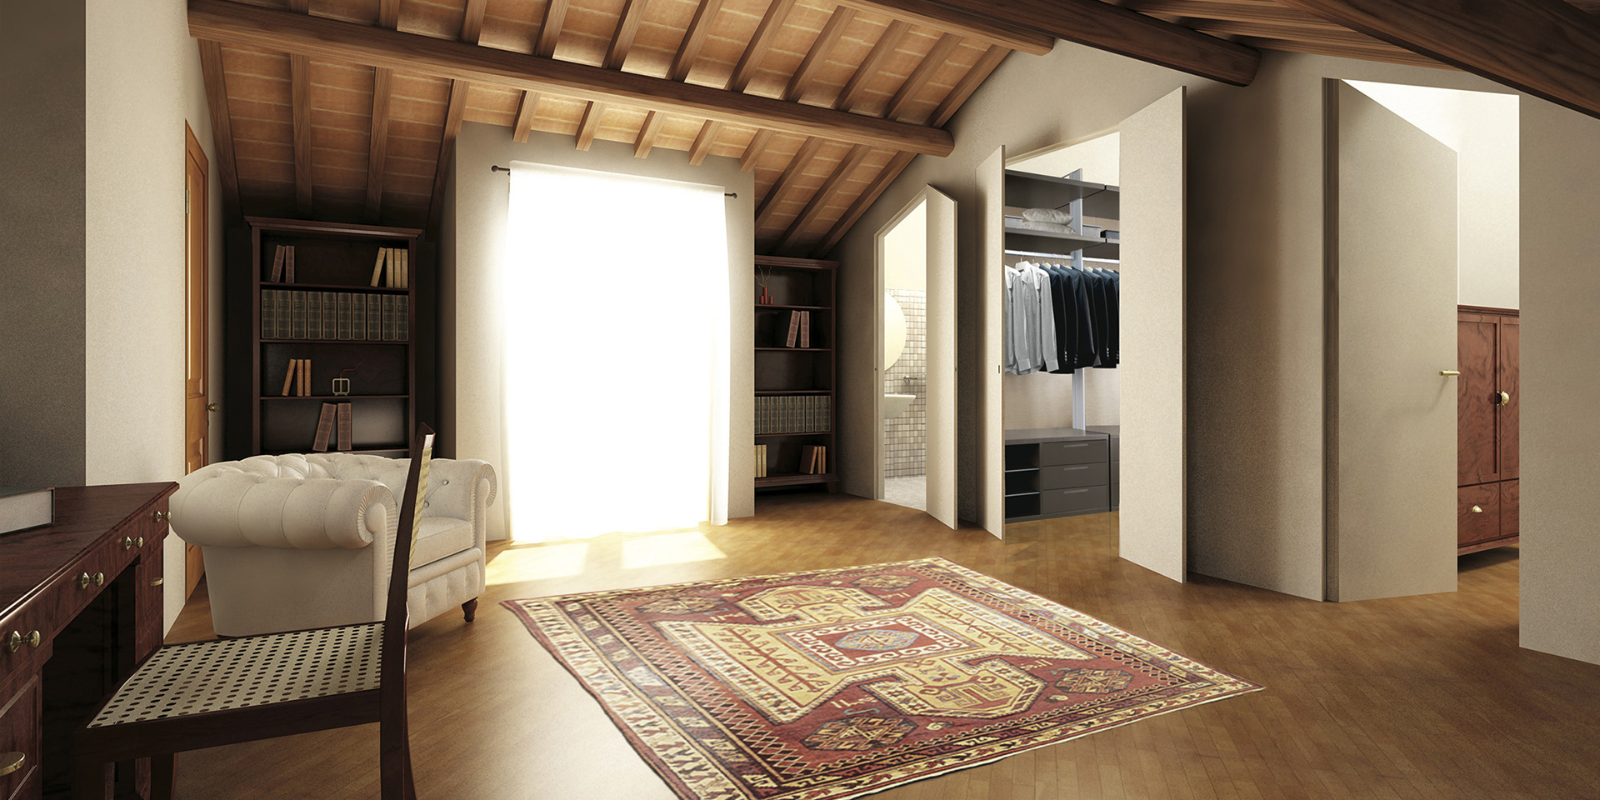 Interno casa elegante con mobili classici e tappeto.